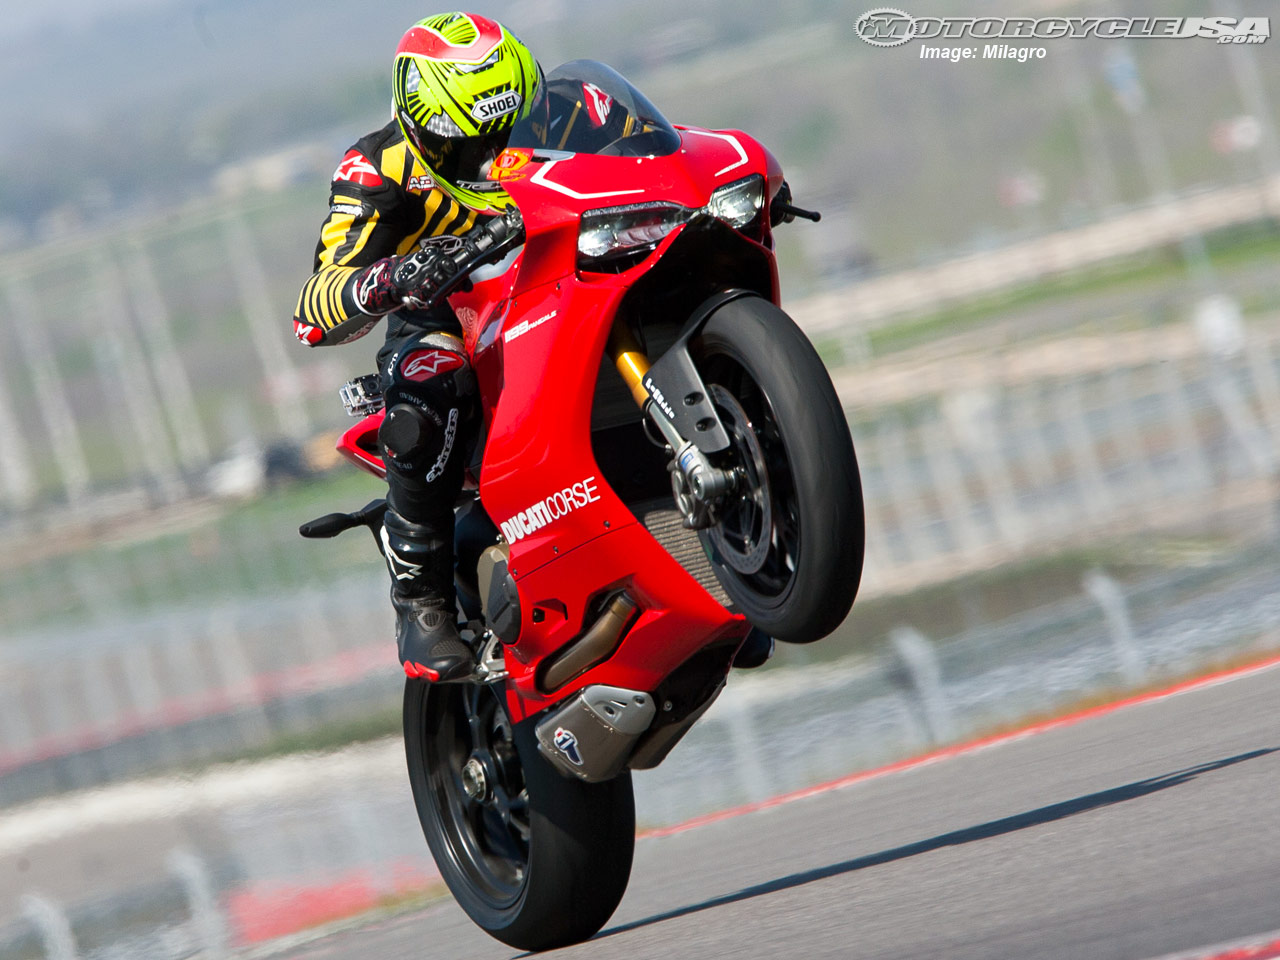 2013 Ducati 1199 Panigale R #8